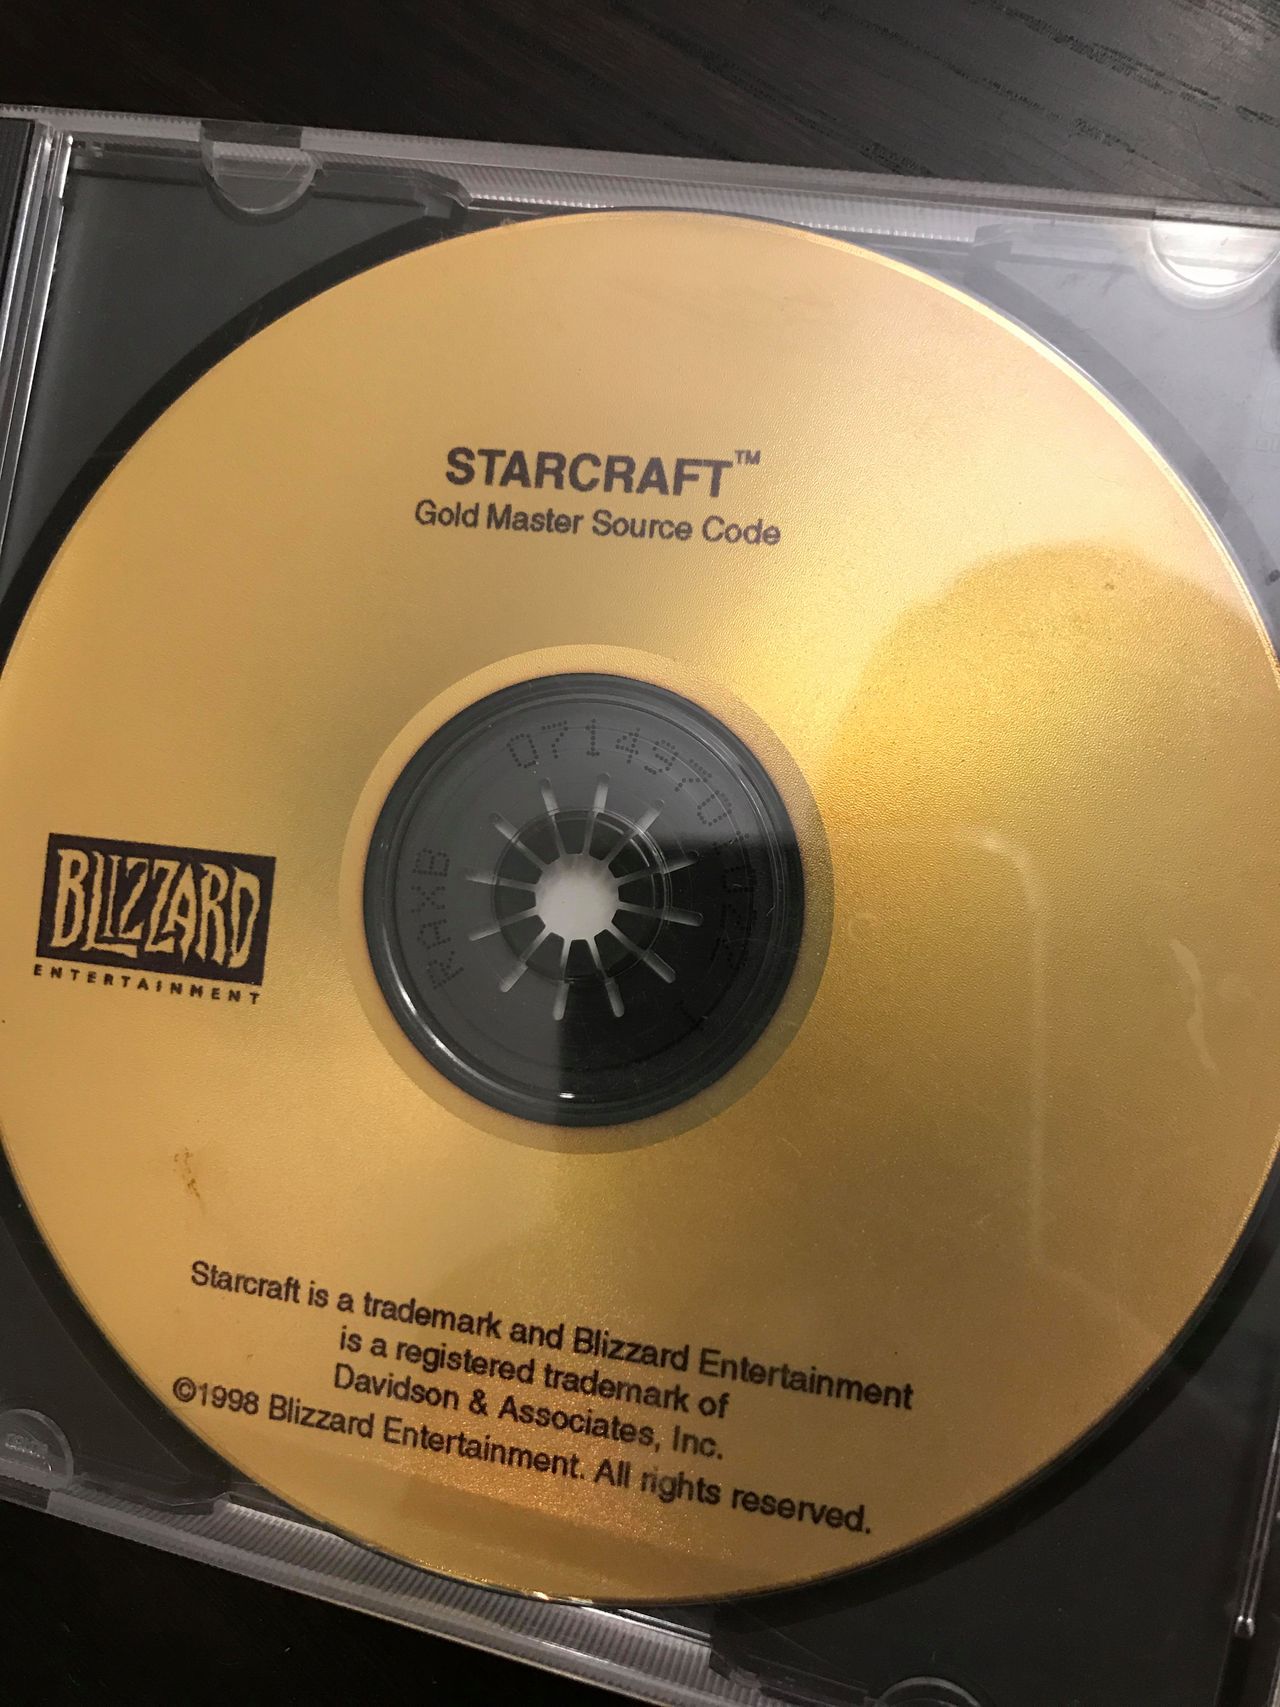 Złota płyta z kodem StarCrafta nieuchwytna jak złoty pociąg. Odnalazła się dopiero po niemal 20 latach